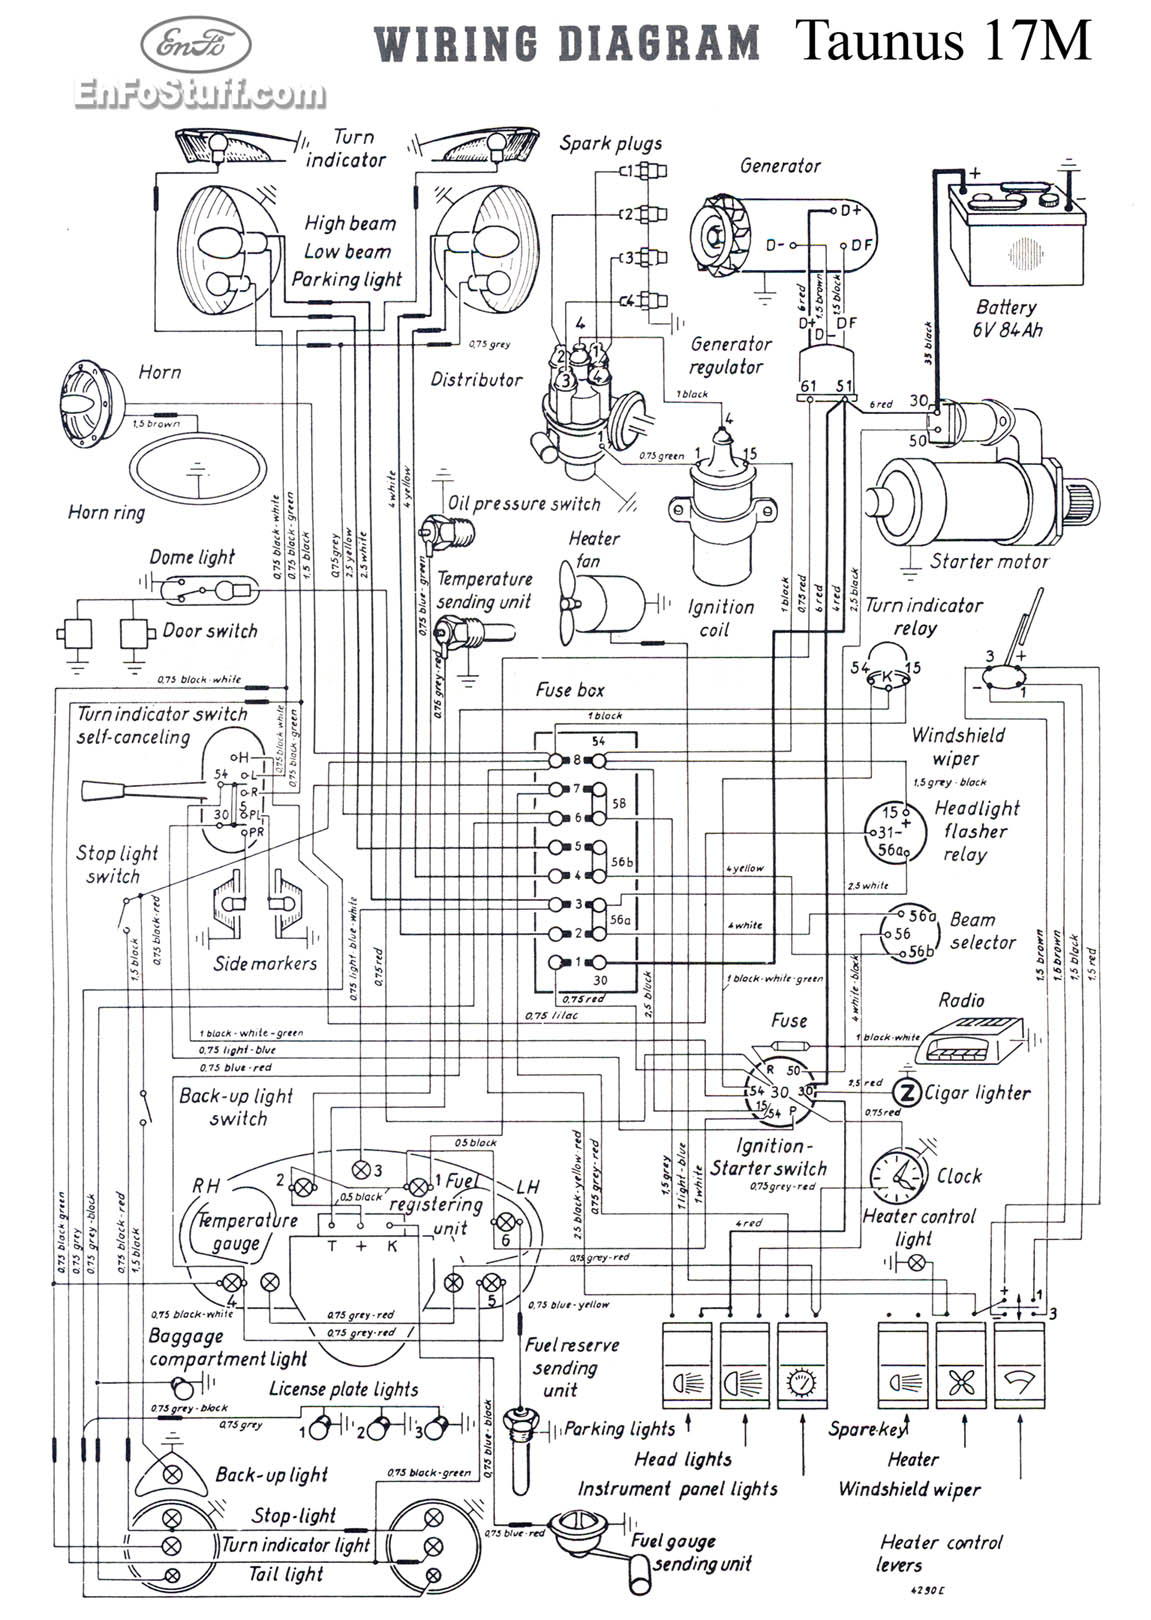 Wiring Diagrams (Schematics)